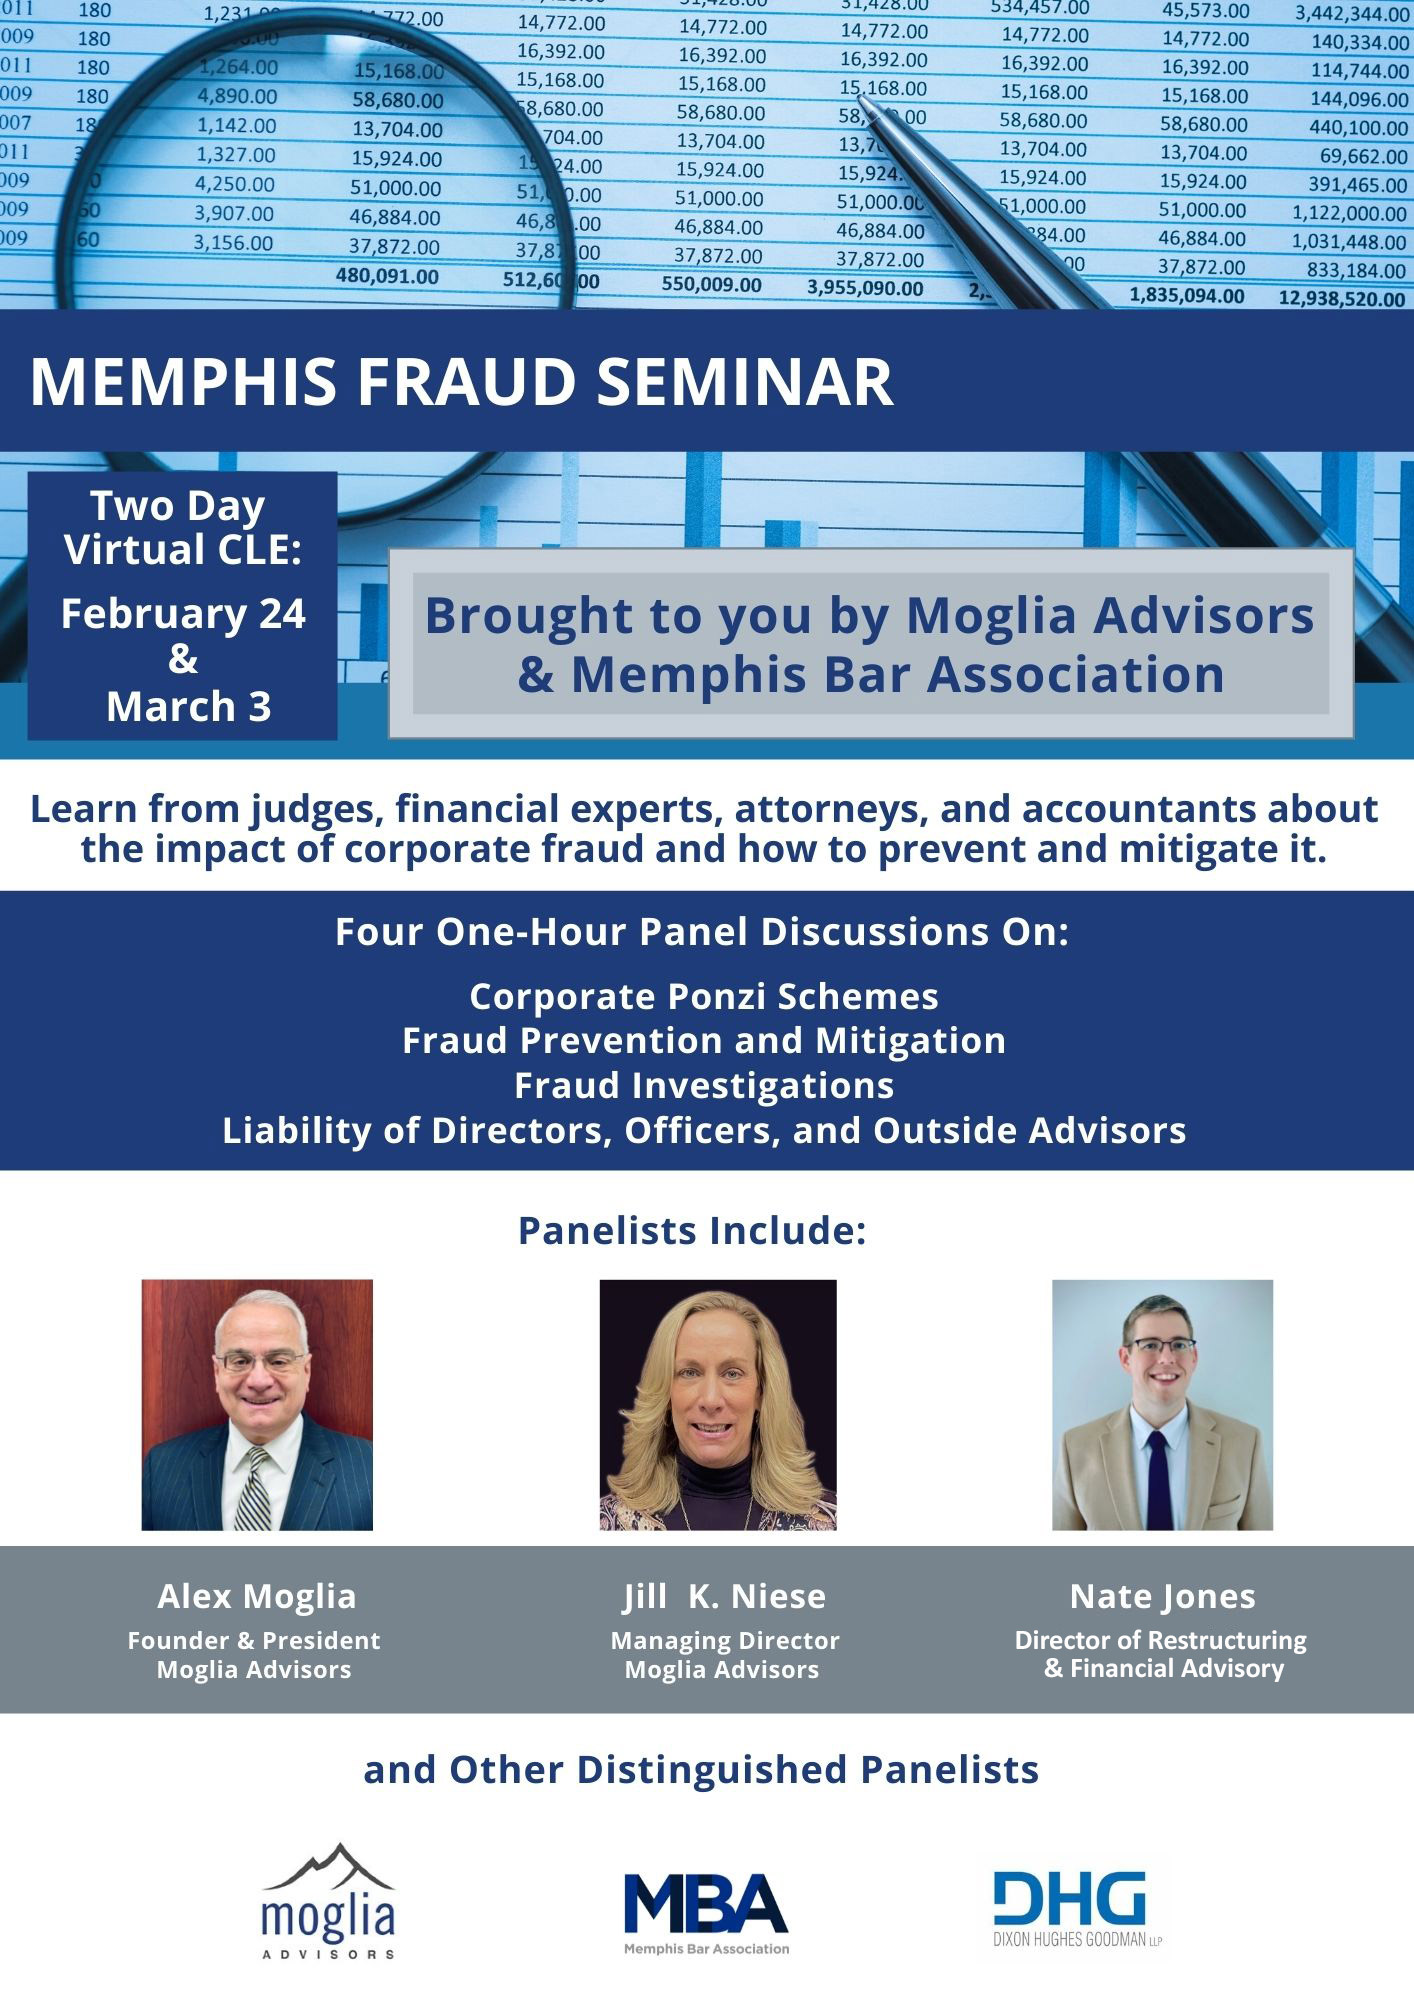 Moglia Advisors were Speakers at Memphis Fraud Seminar in 2022